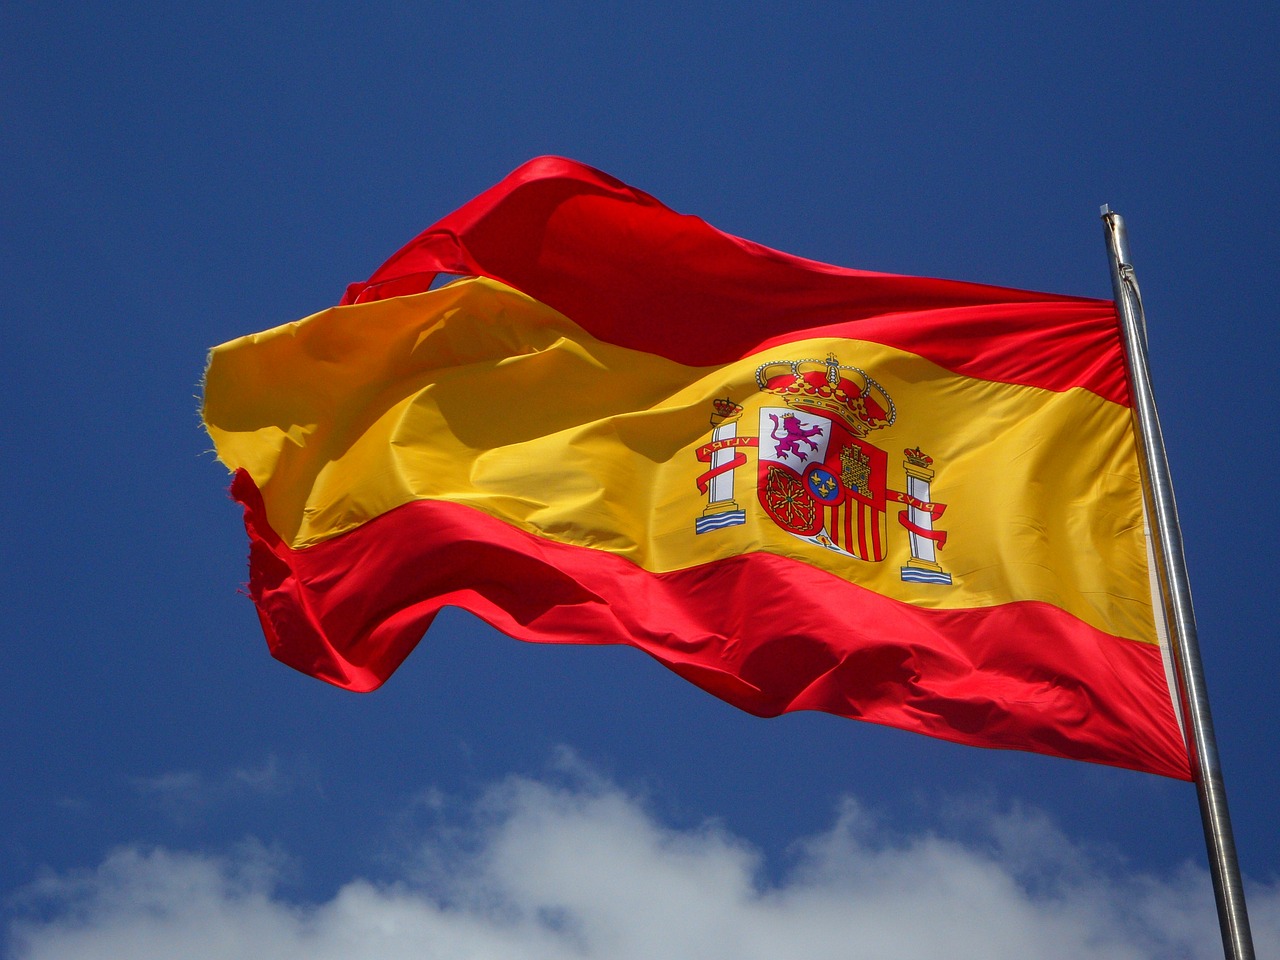 Espagne: un parachutiste heurte un lampadaire en plein défilé militaire